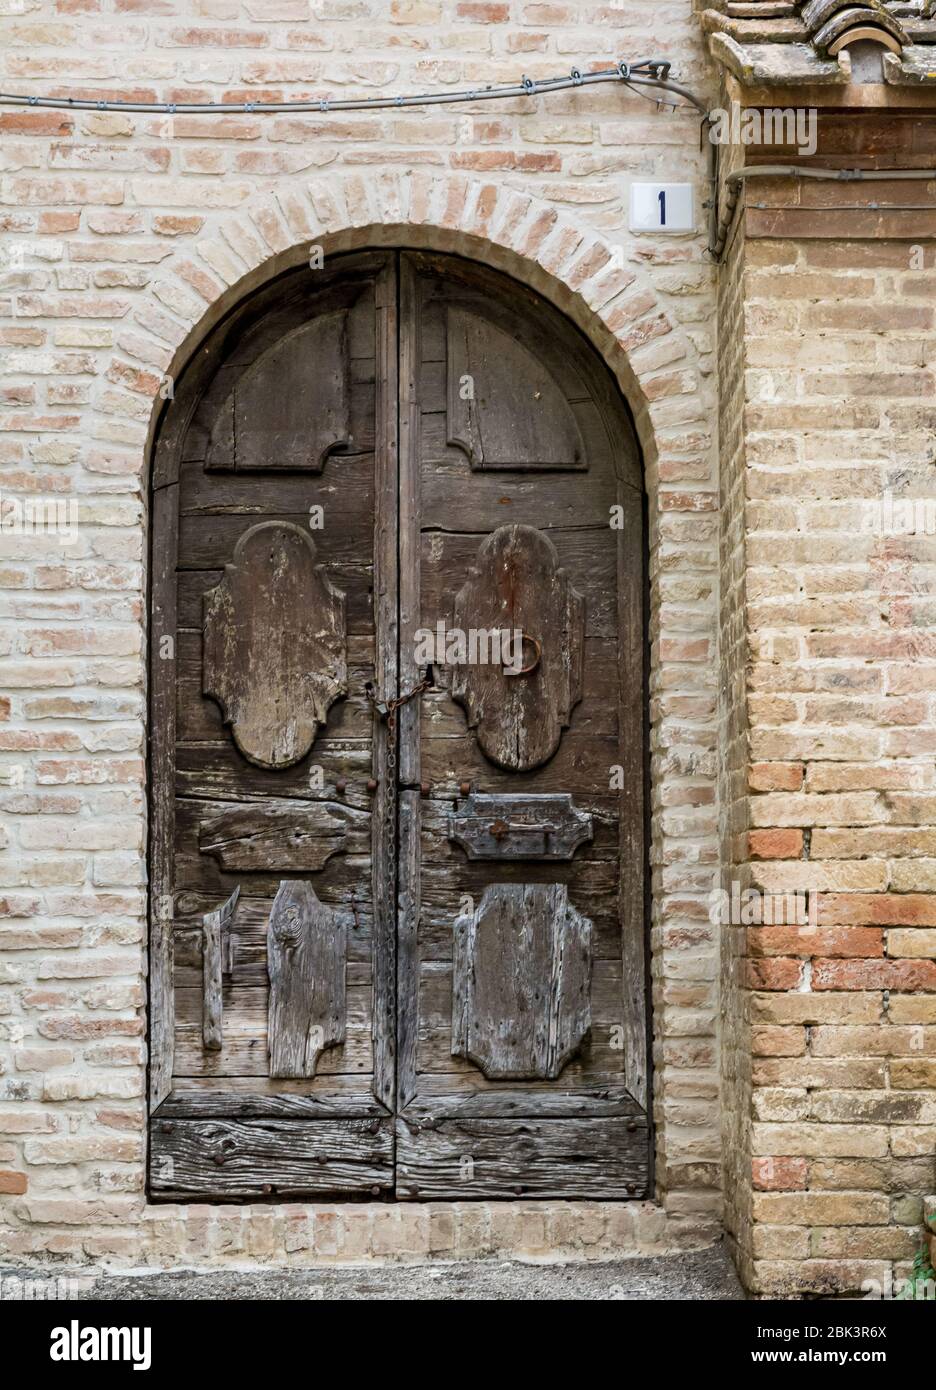 Offida, un ancien village de la région des Marches en Italie. Une vieille porte au milieu du village médiéval d'Italie Banque D'Images